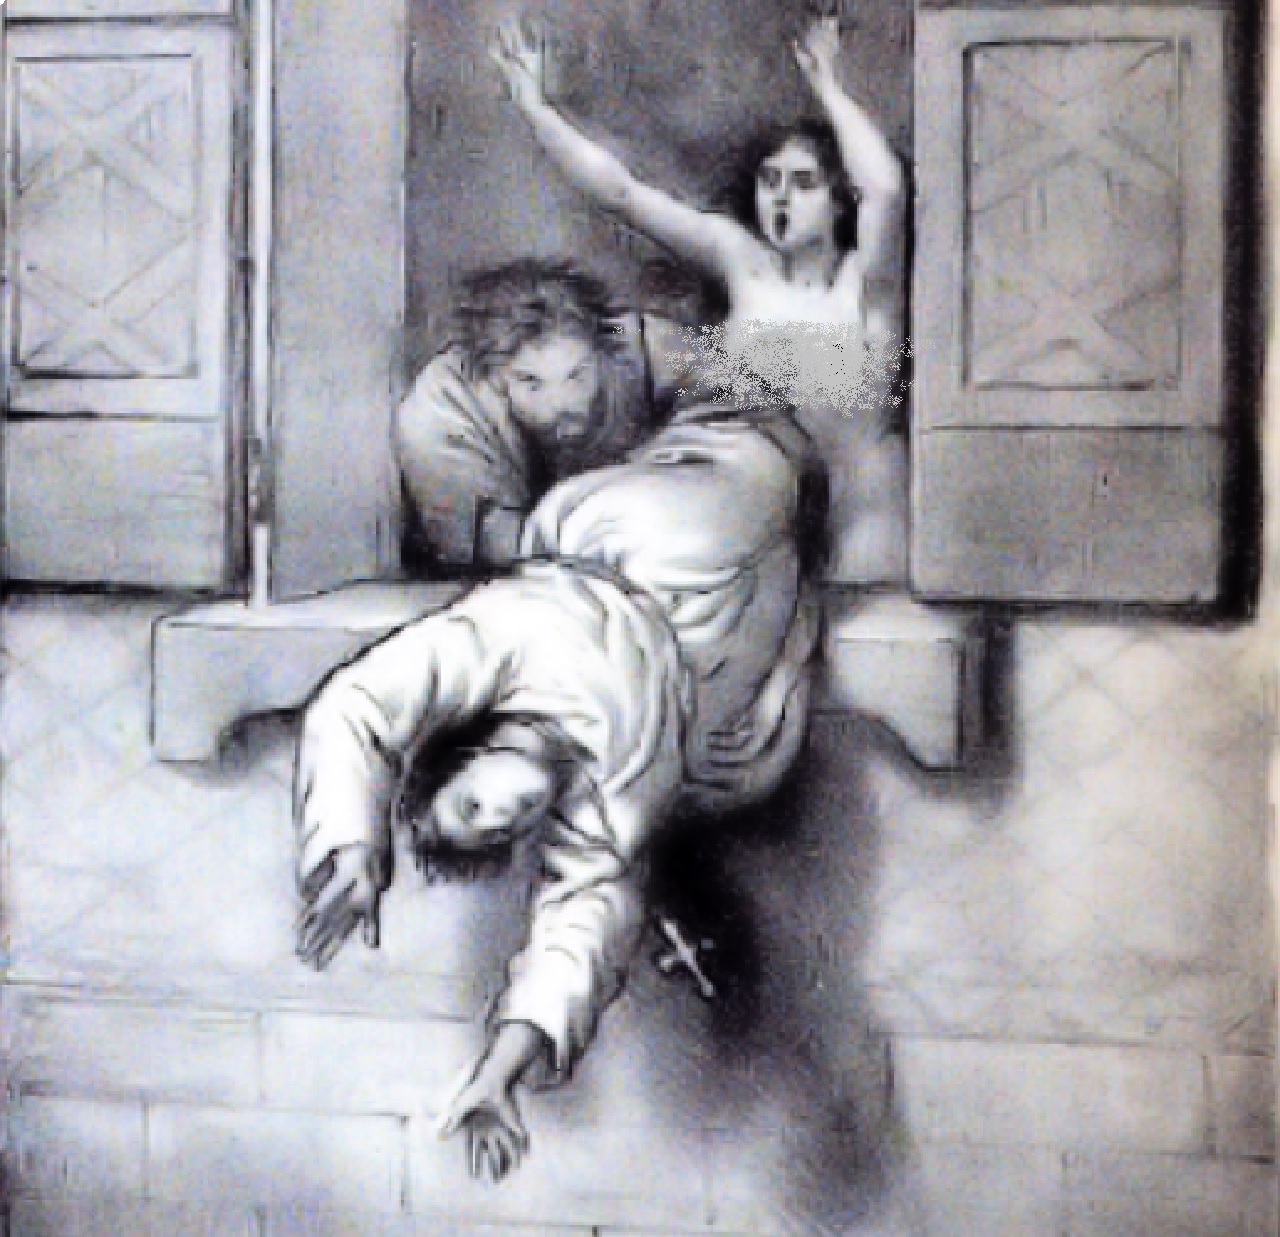 Giovanni XII raffigurazione di una delle sue scappate notturne